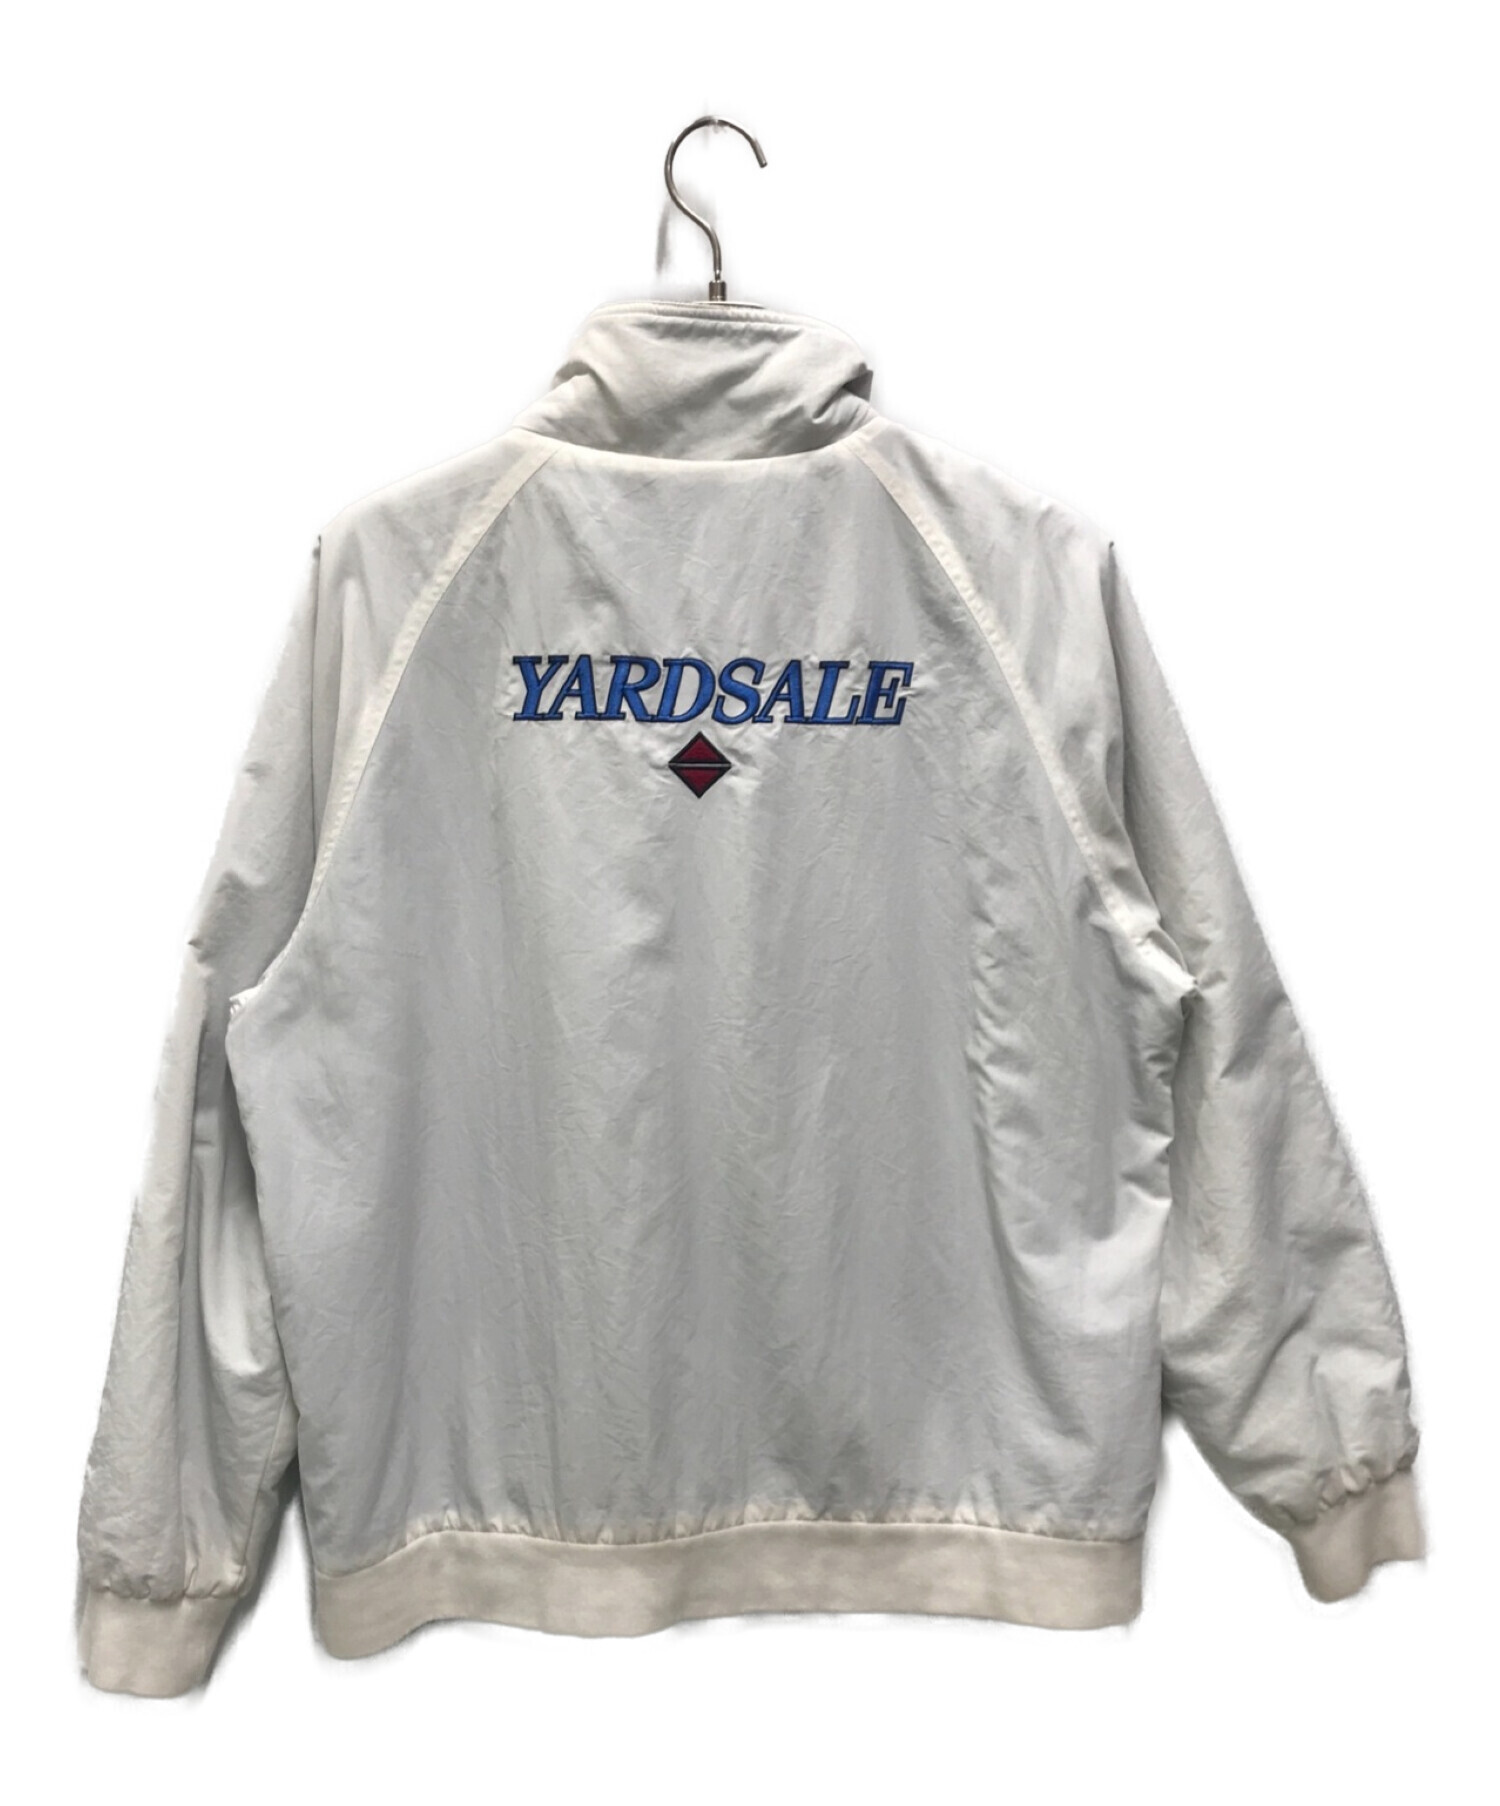 Yardsale ジャケット - アウター